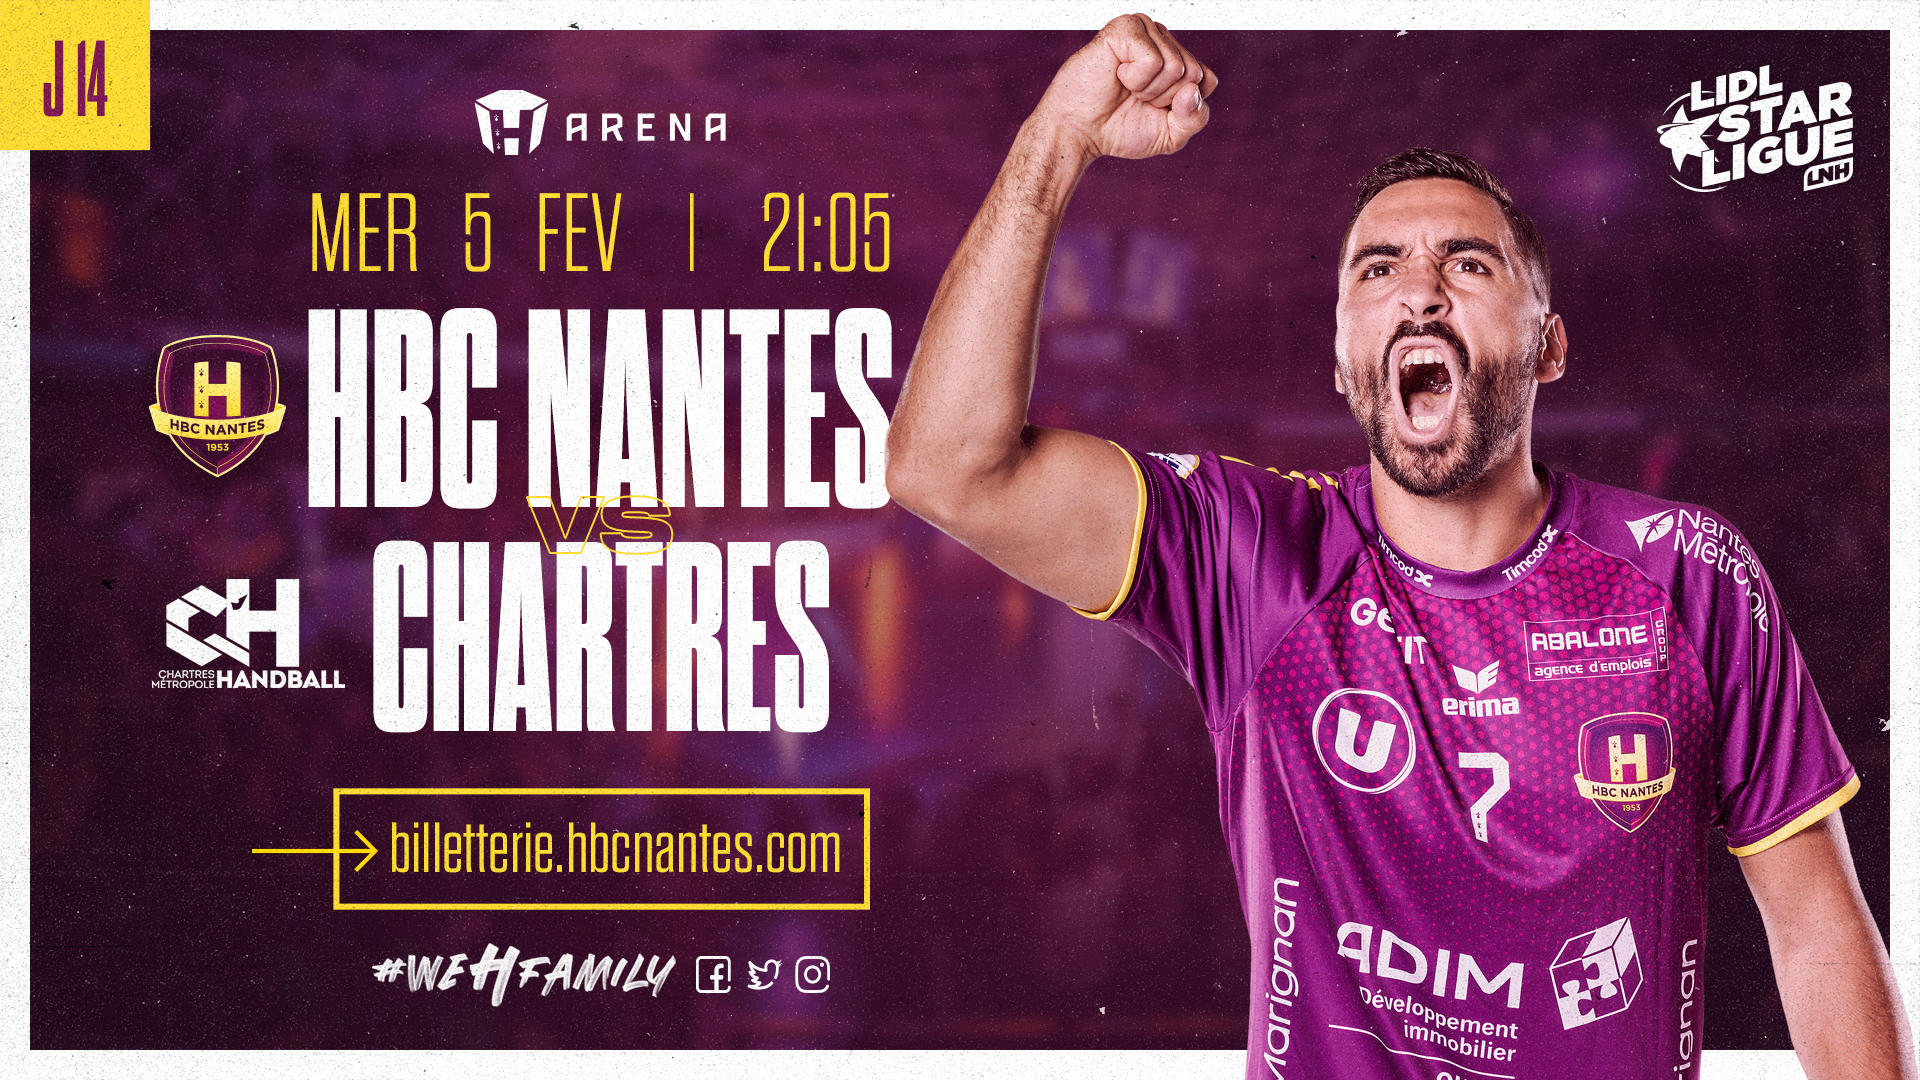 ⚠️ Changement d'horaire : HBC Nantes - Chartres